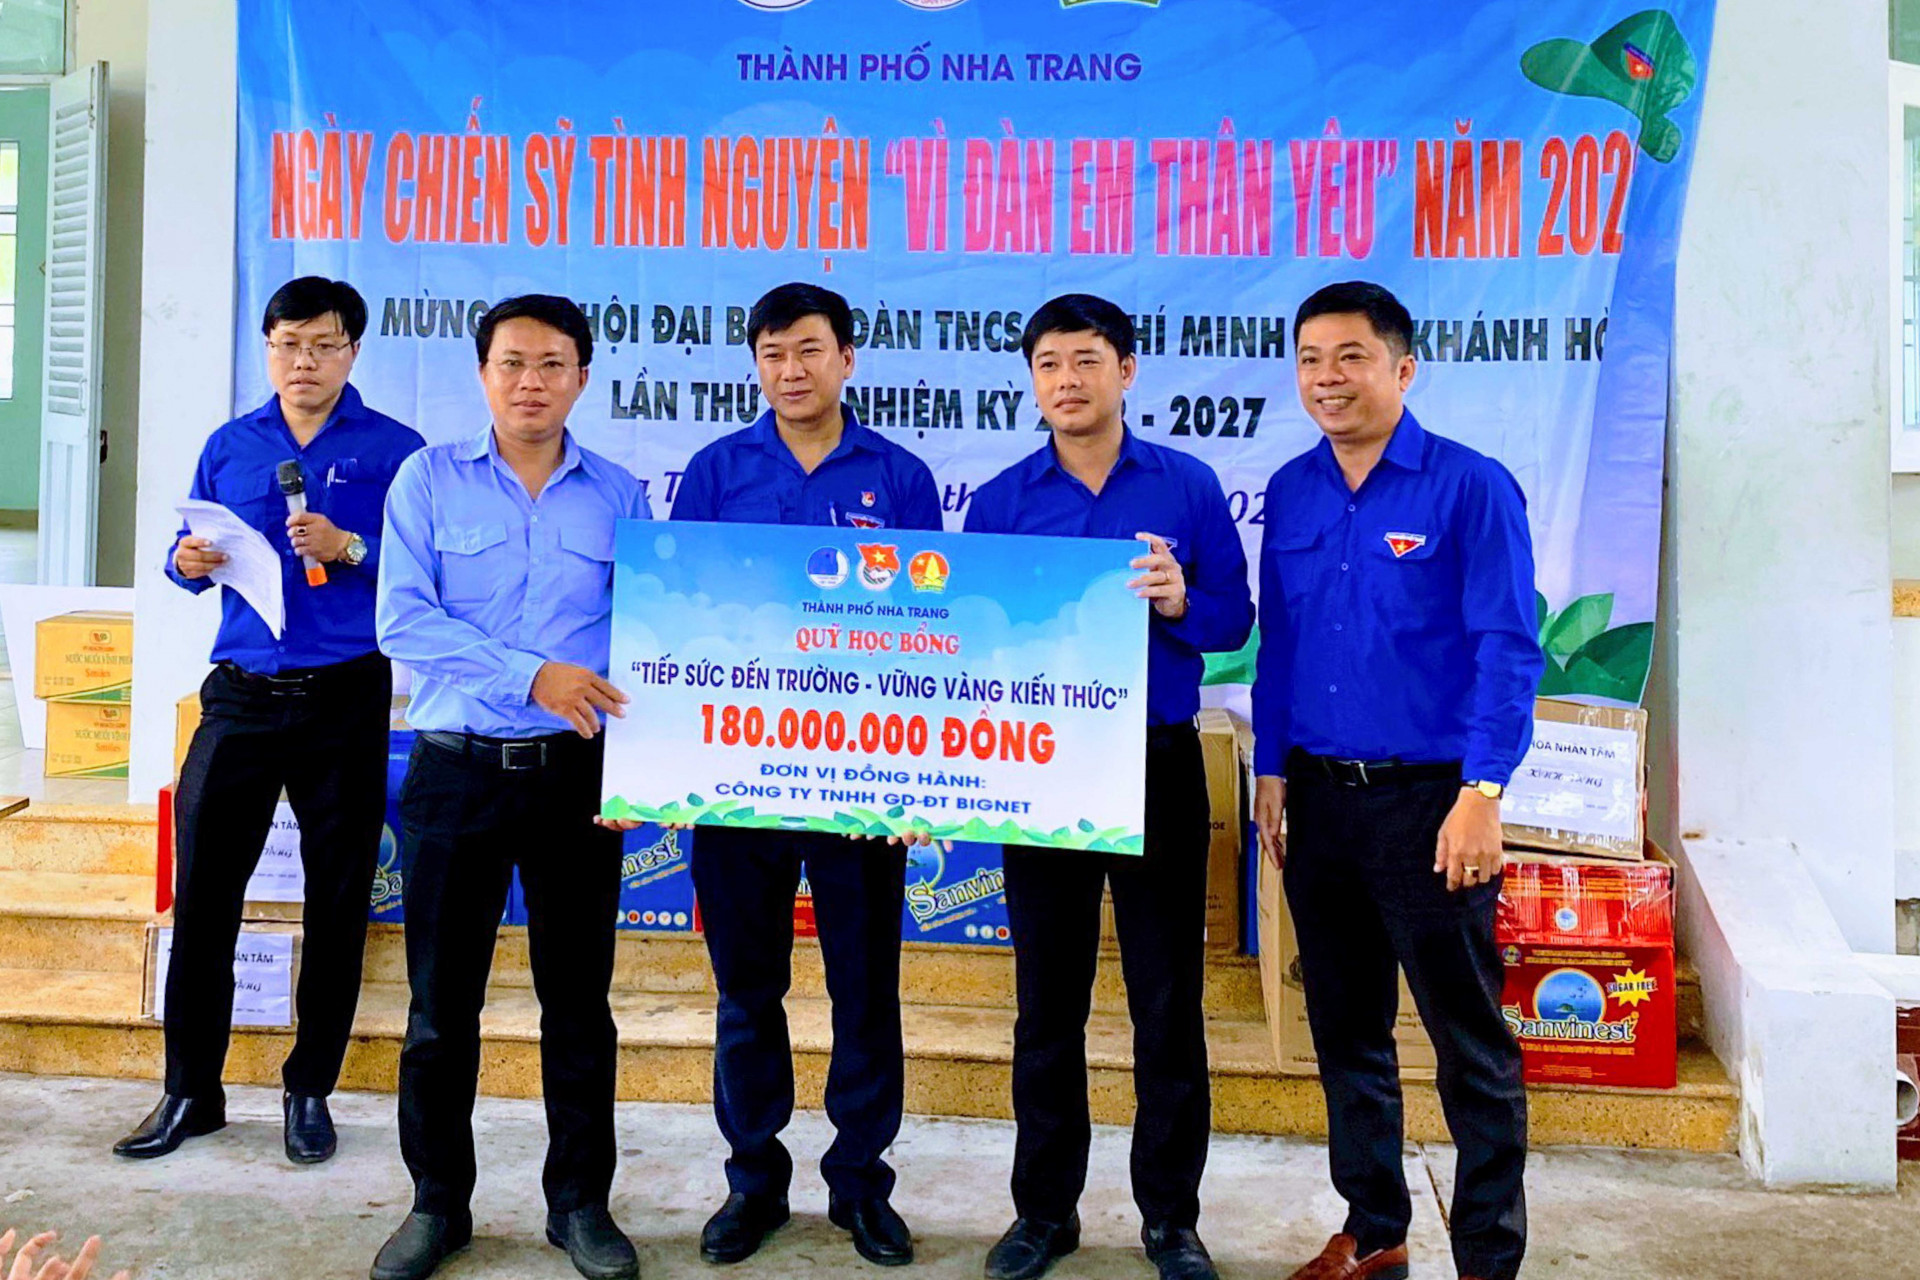 Lãnh đạo Tỉnh đoàn trao cho lãnh đạo Thành đoàn Nha Trang biểu trưng 42 suất học bổng của Công ty TNHH Giáo dục và đào tạo BIGNET hỗ trợ cho các học sinh trên địa bàn thành phố